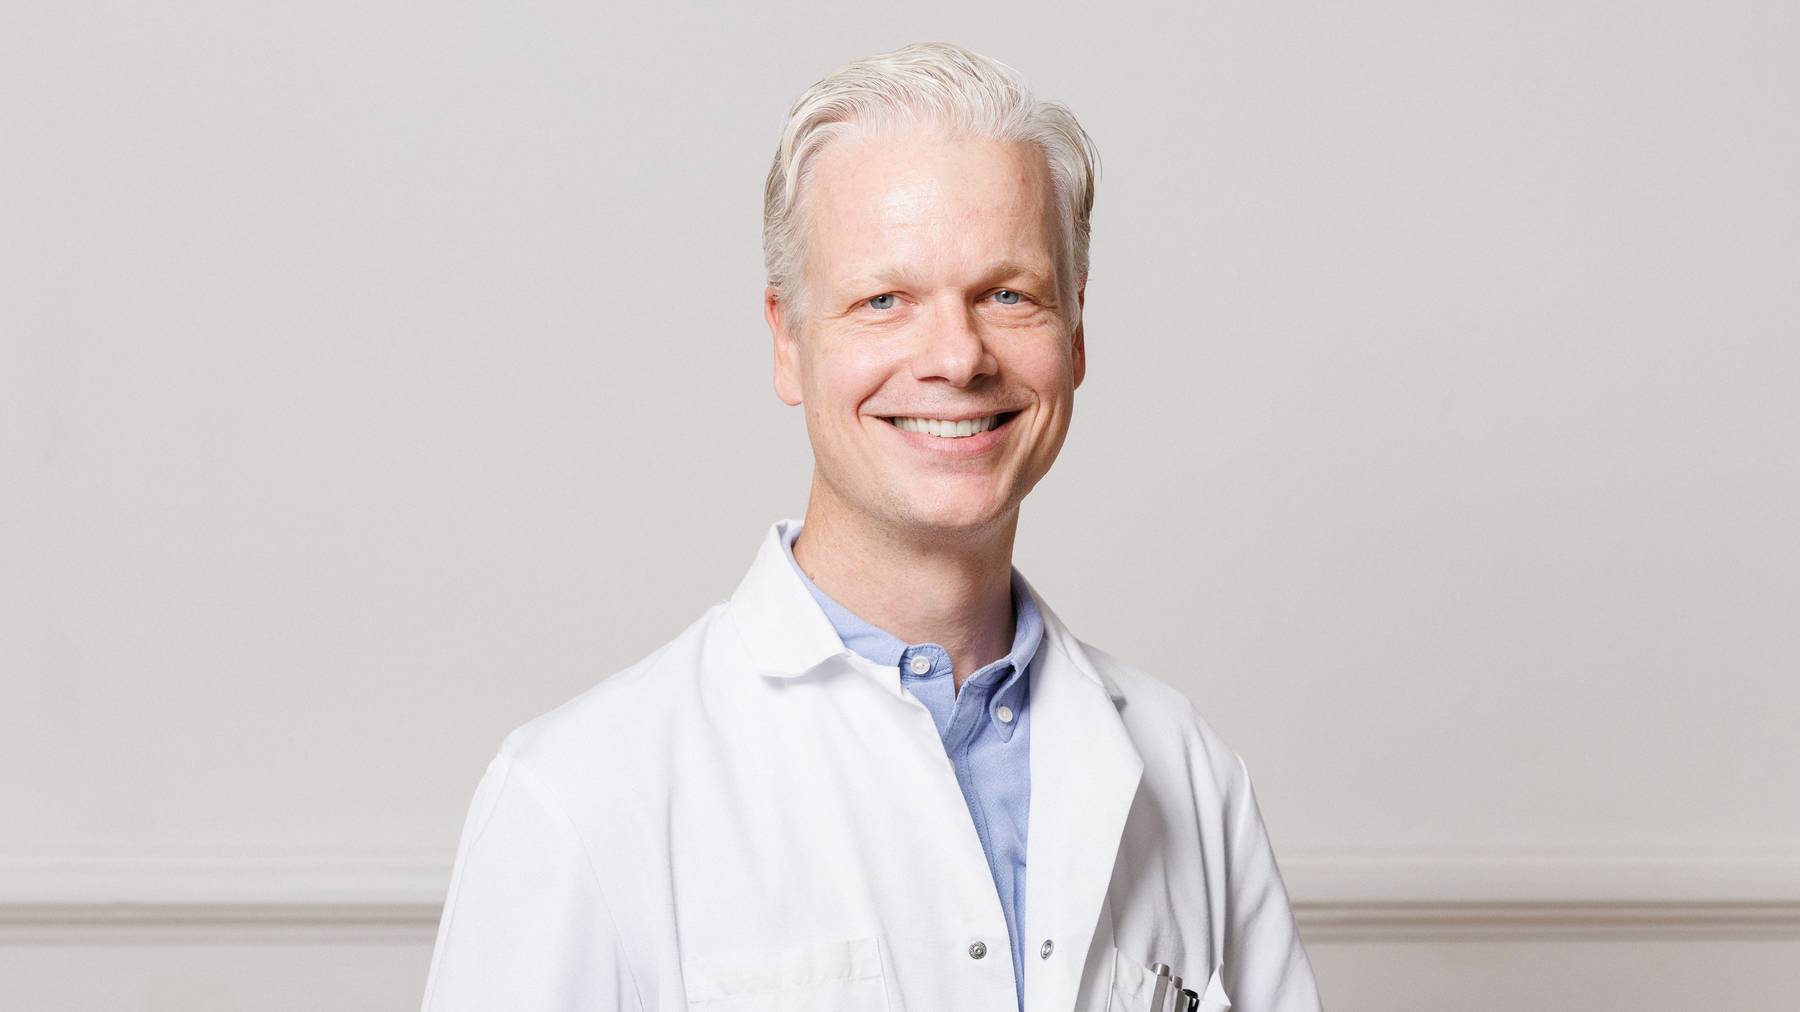 Prof. Dr. med. Christoph Schankin leitet die Sprechstunde Kopfschmerzen am Inselspital Bern.